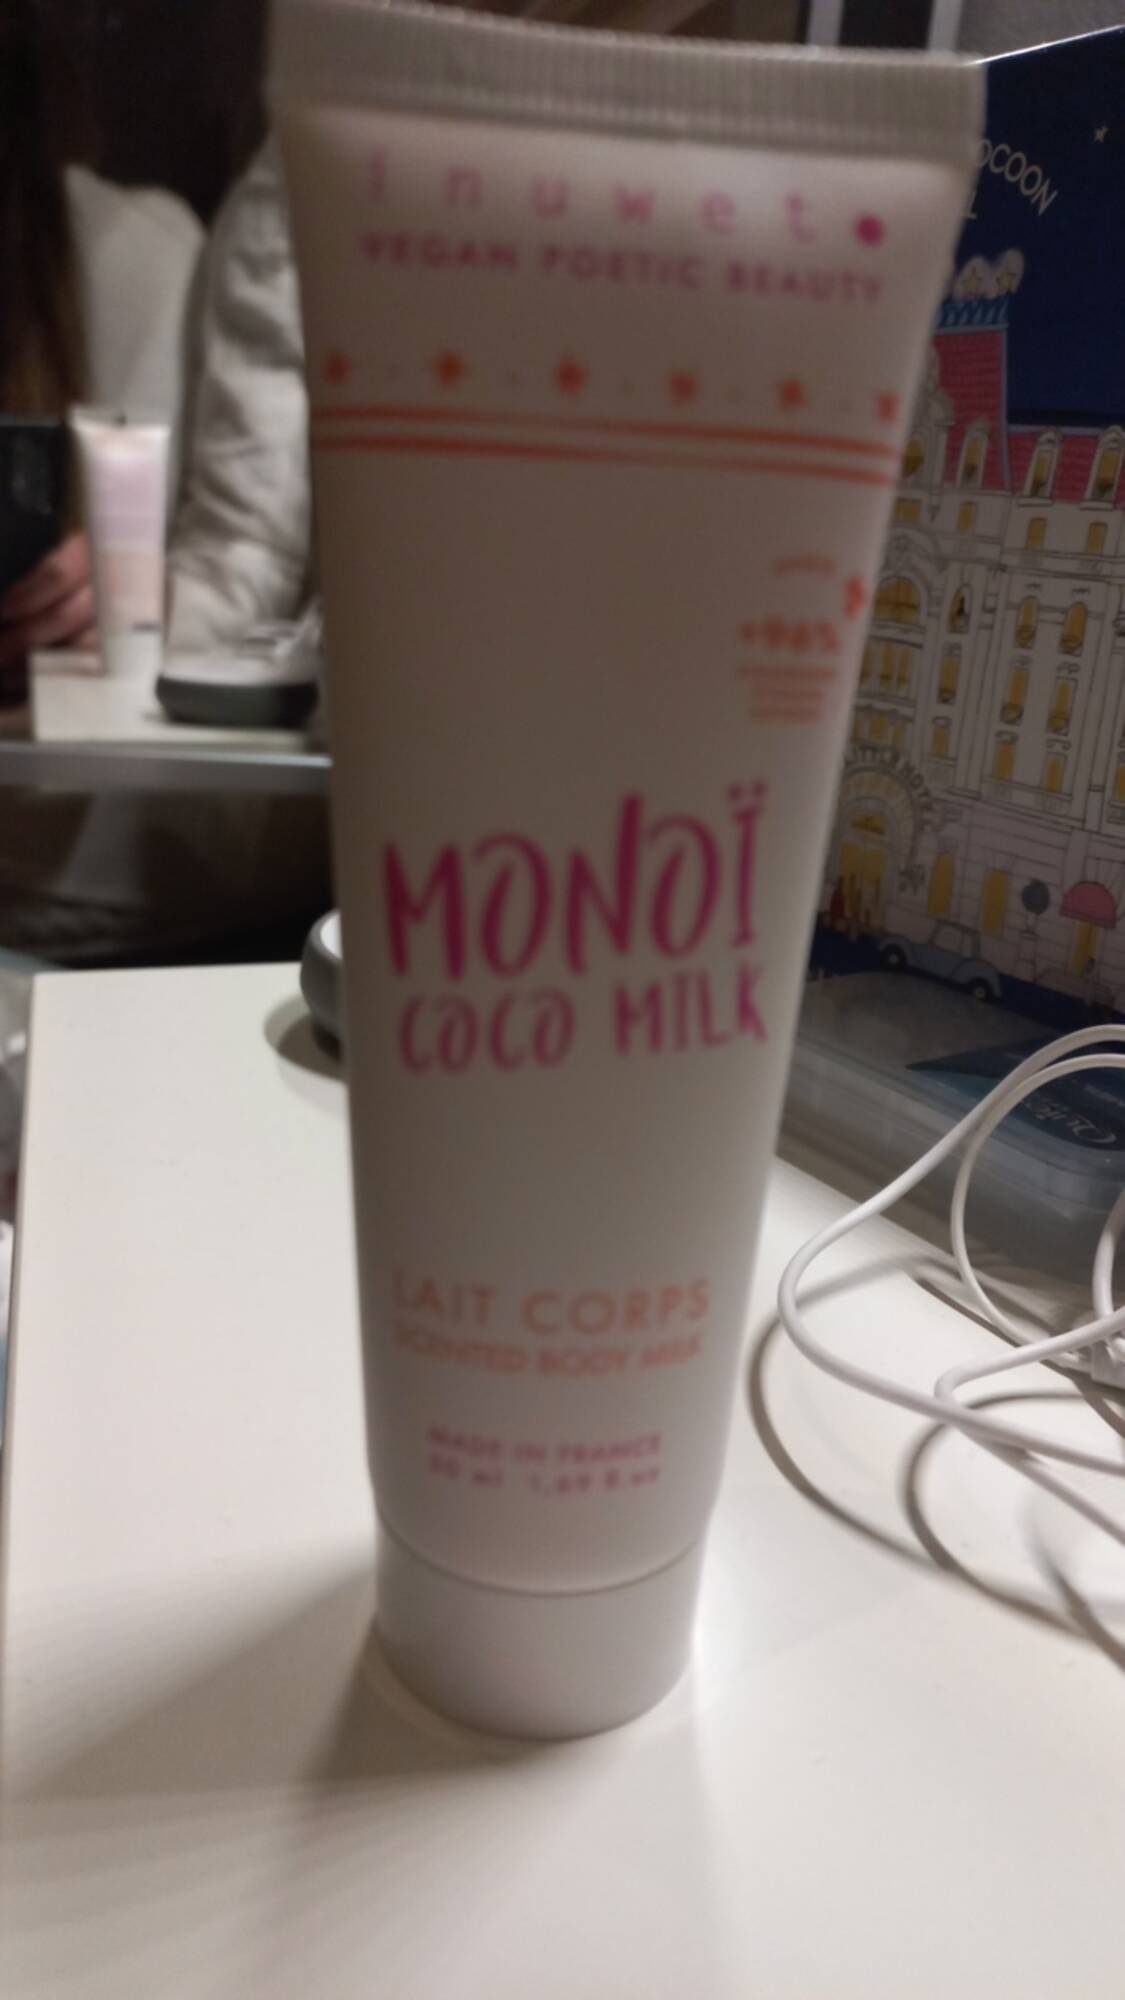 INUWET - Monoï coco milk - Lait corps